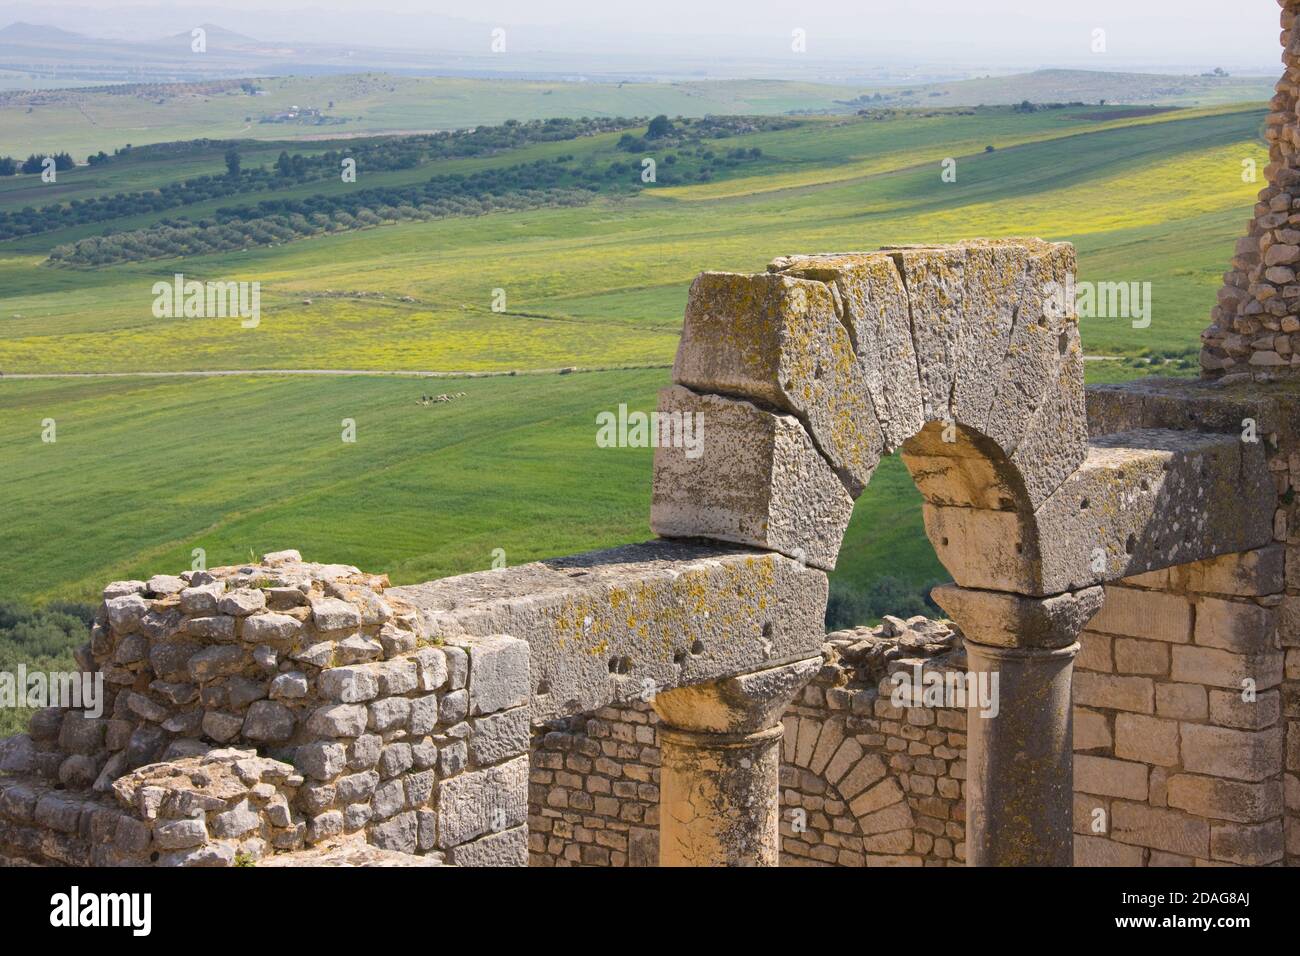 Ruines de Thugga, site classé au patrimoine mondial de l'UNESCO, Tunisie Banque D'Images